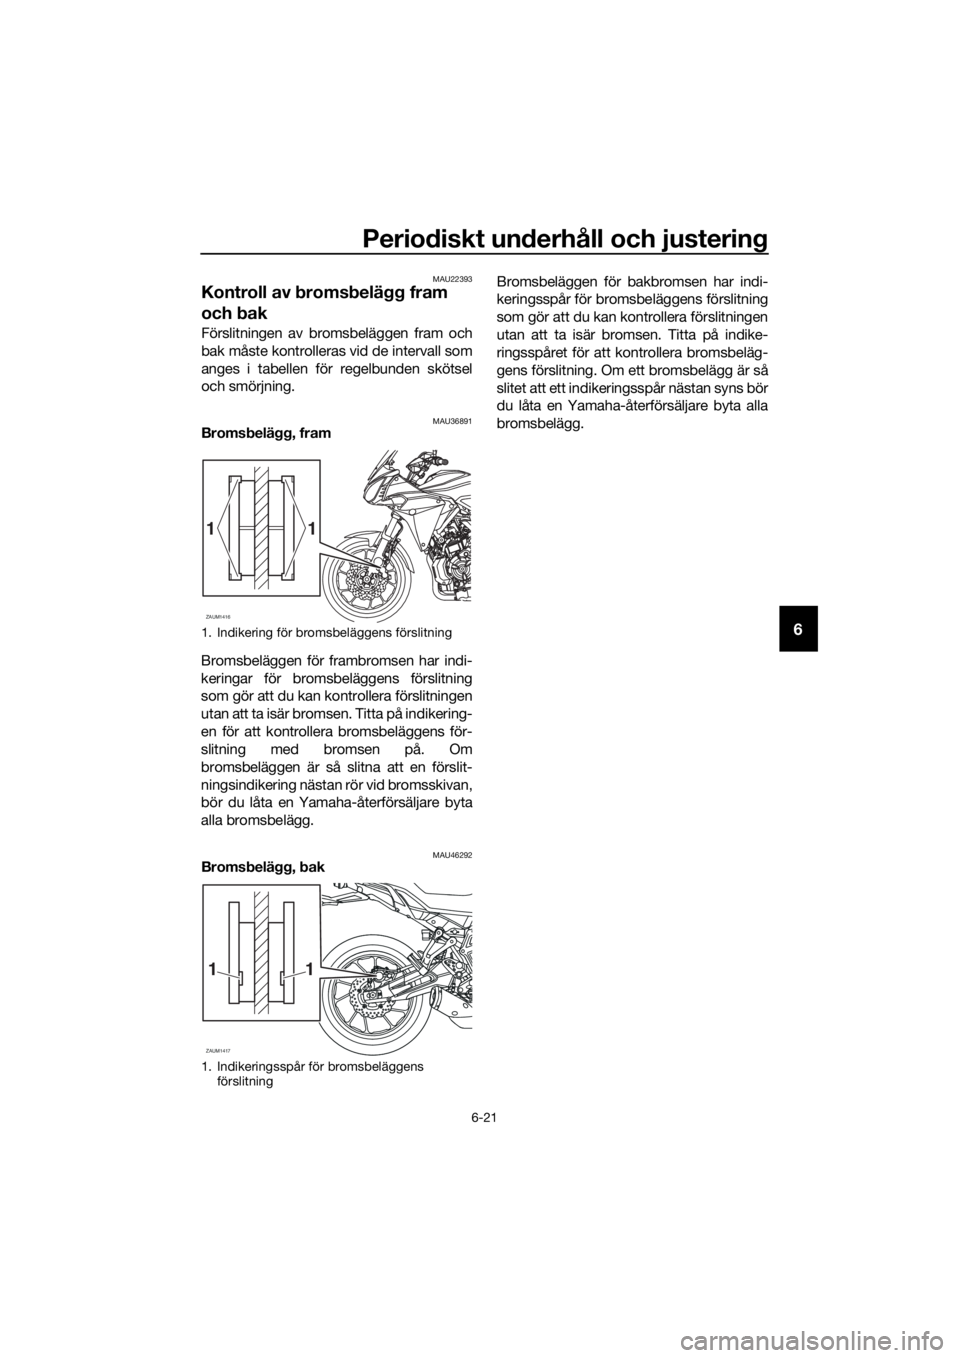 YAMAHA TRACER 700 2017  Bruksanvisningar (in Swedish) Periodiskt underhåll och justering
6-21
6
MAU22393
Kontroll av bromsbelägg fram 
och bak
Förslitningen av bromsbeläggen fram och
bak måste kontrolleras vid de intervall som
anges i tabellen för 